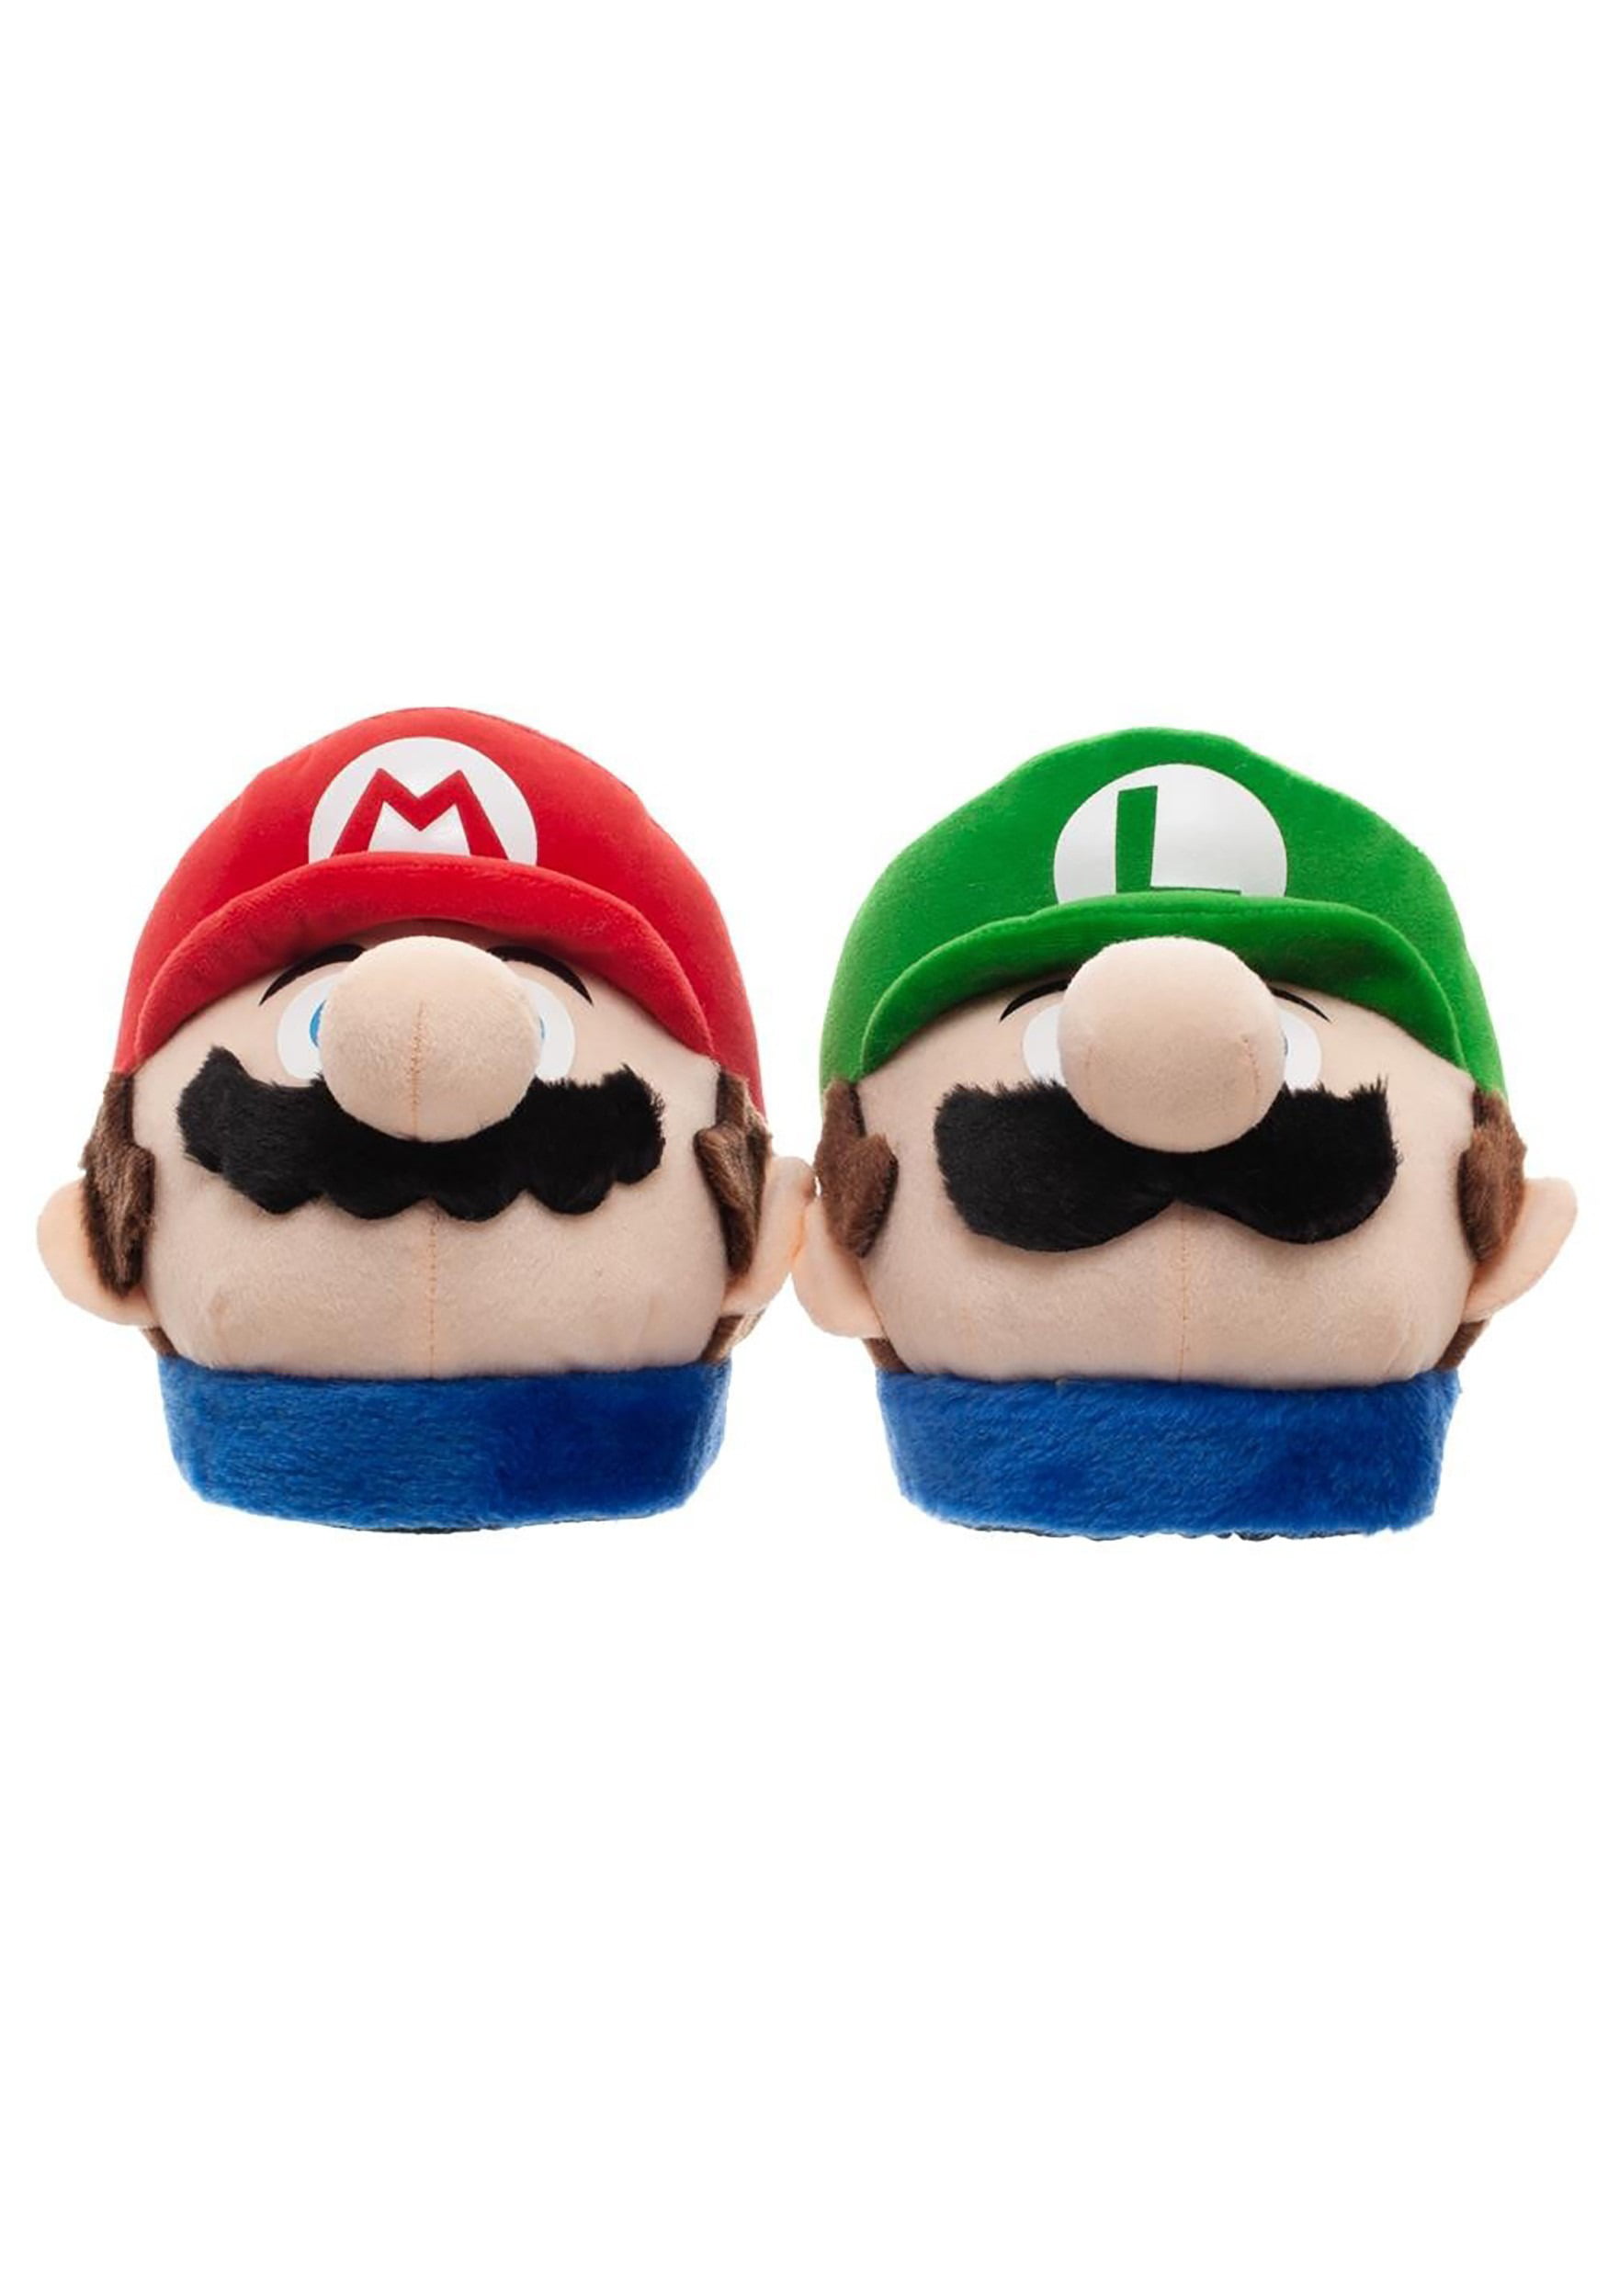 Super Mario Bros. Mario \u0026 Luigi Plush 